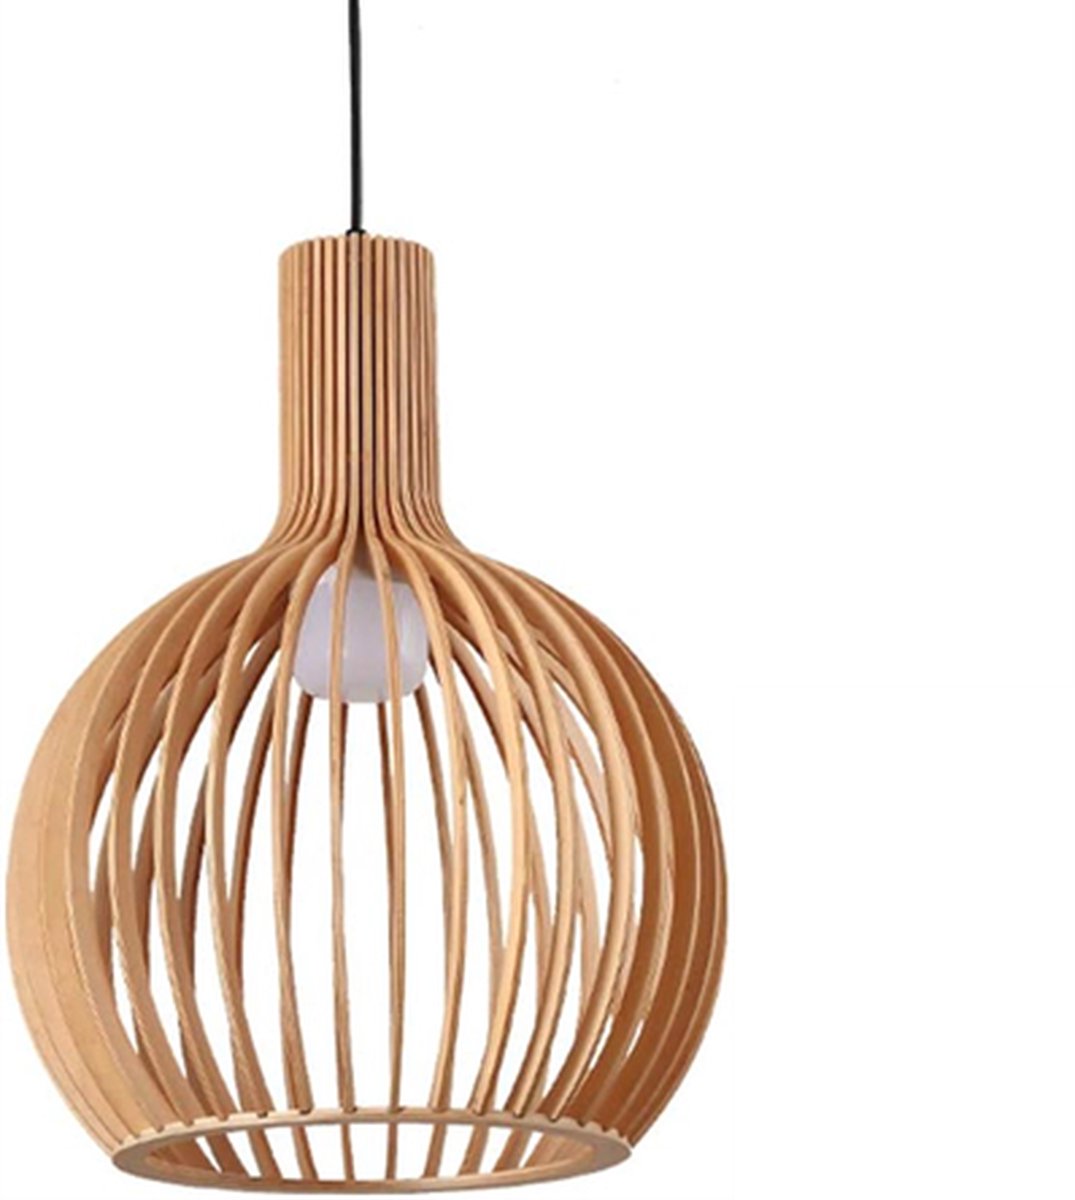 Hanglamp Rosolina - Handgemaakt - Ø55cm - Bamboe - Rotan - Inclusief lichtbron - Chique - Natuurlijke uitstraling